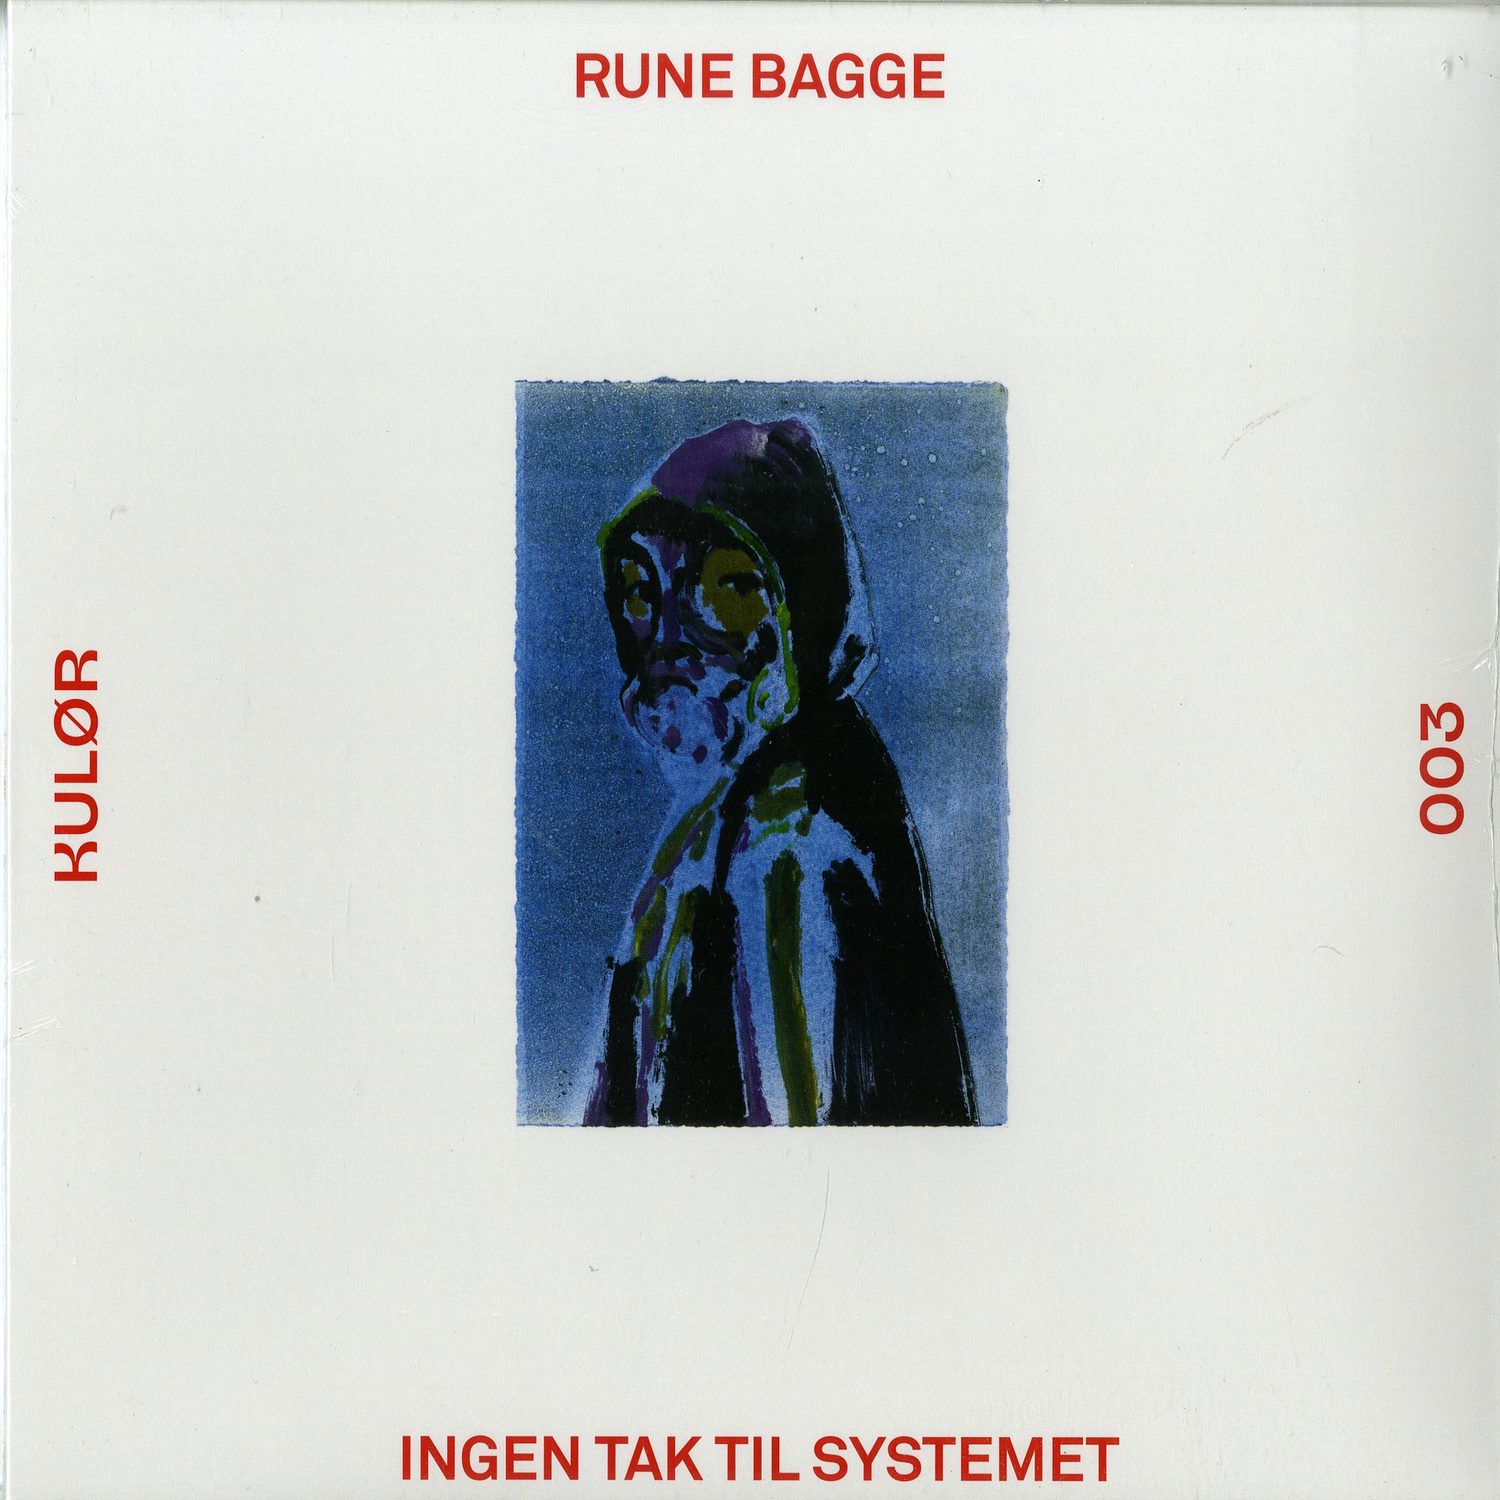 Rune Bagge - INGEN TAK TIL SYSTEMET